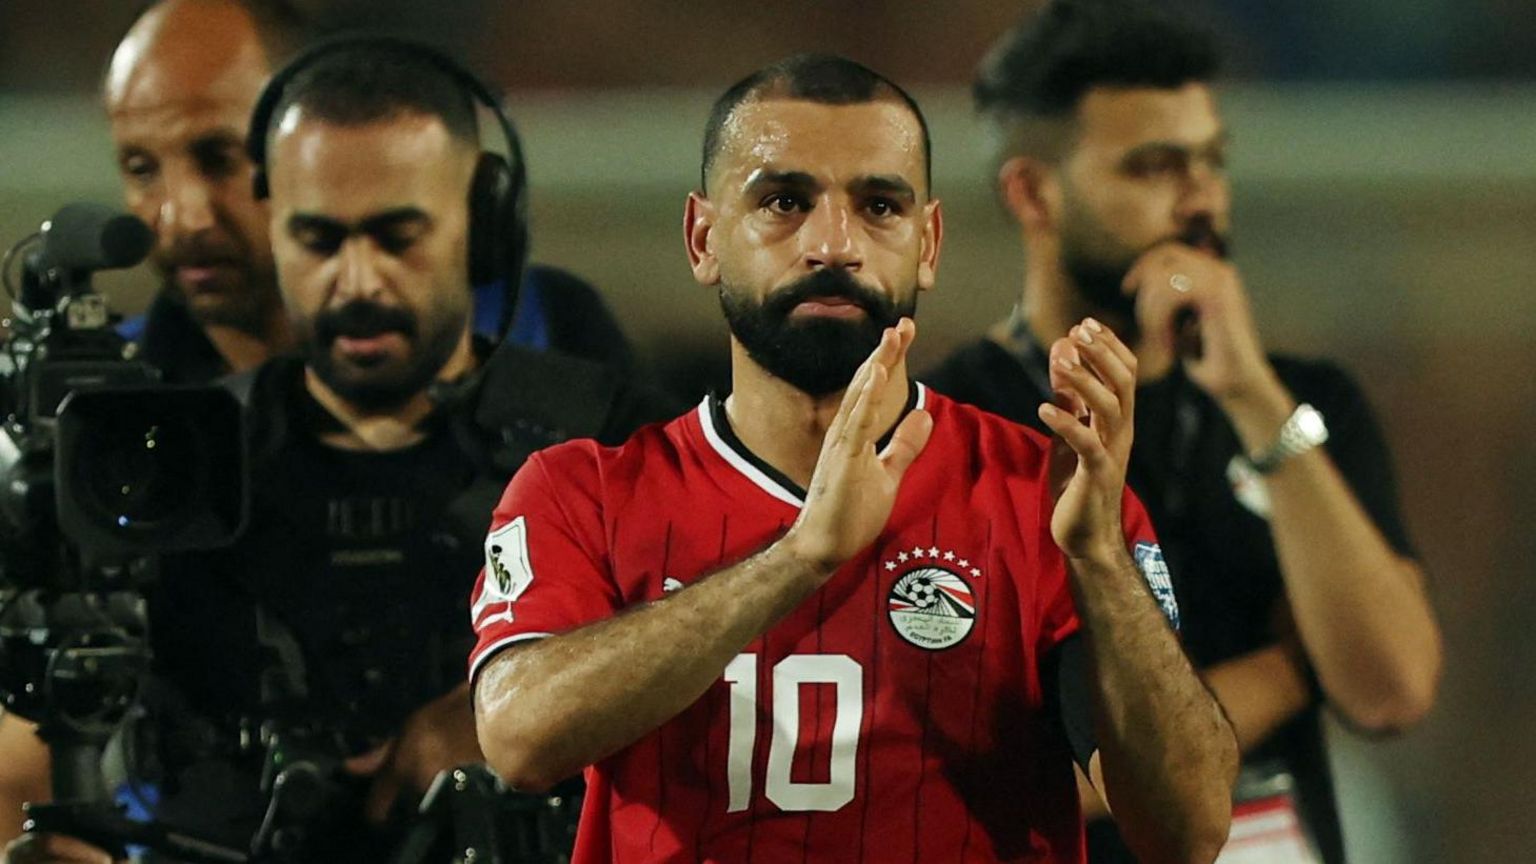 Mohamed Salah applauds fans after Egypt win a match